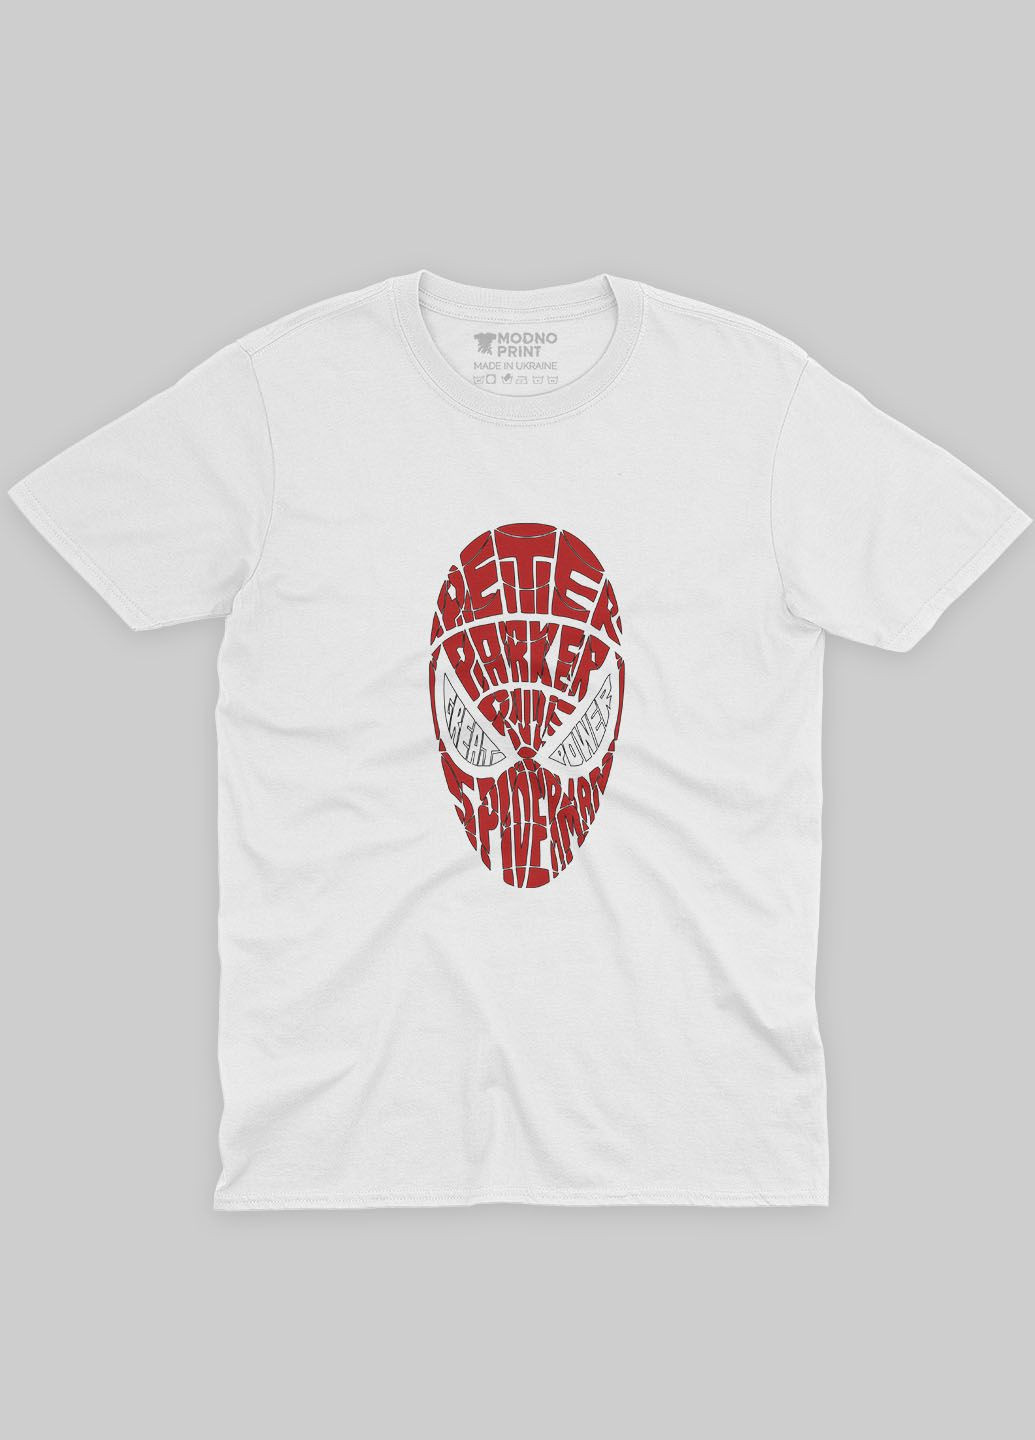 Белая демисезонная футболка для мальчика с принтом супергероя - человек-паук (ts001-1-whi-006-014-073-b) Modno